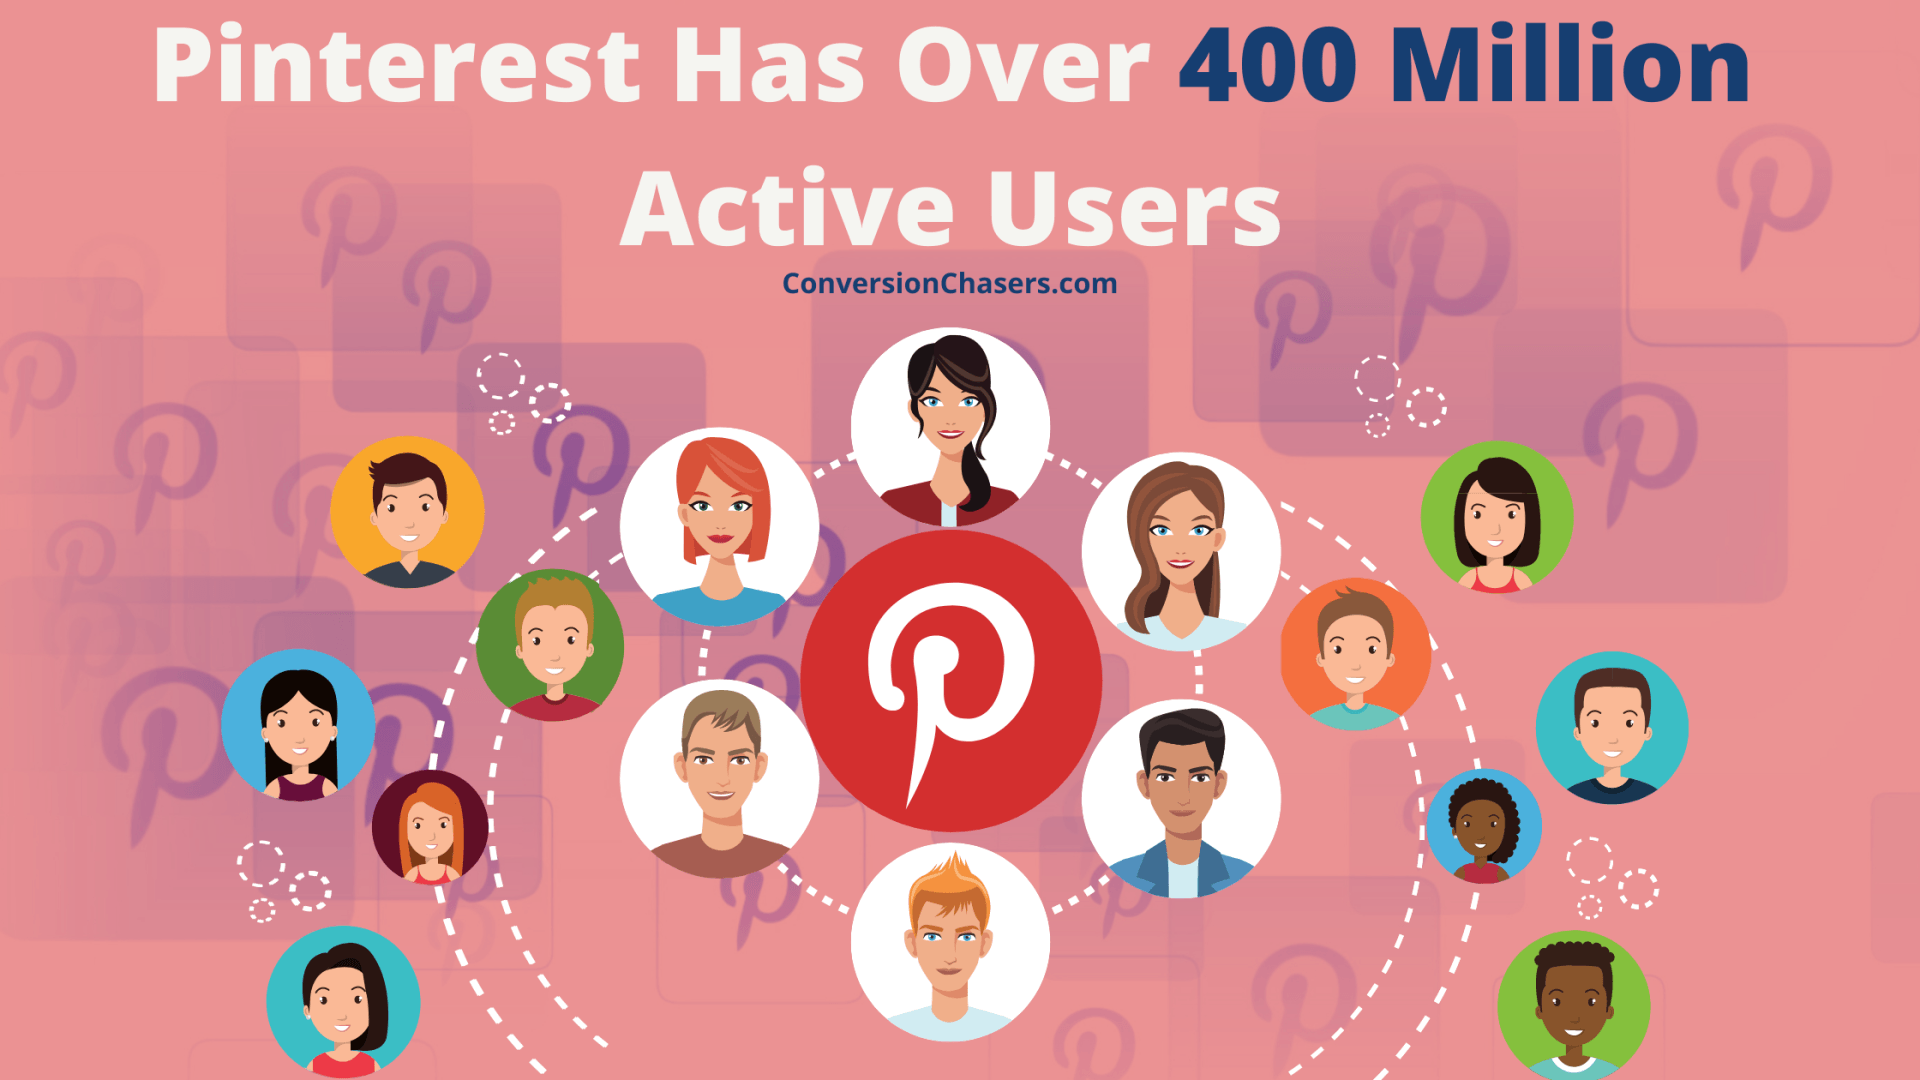 Pinterest is a growing platform